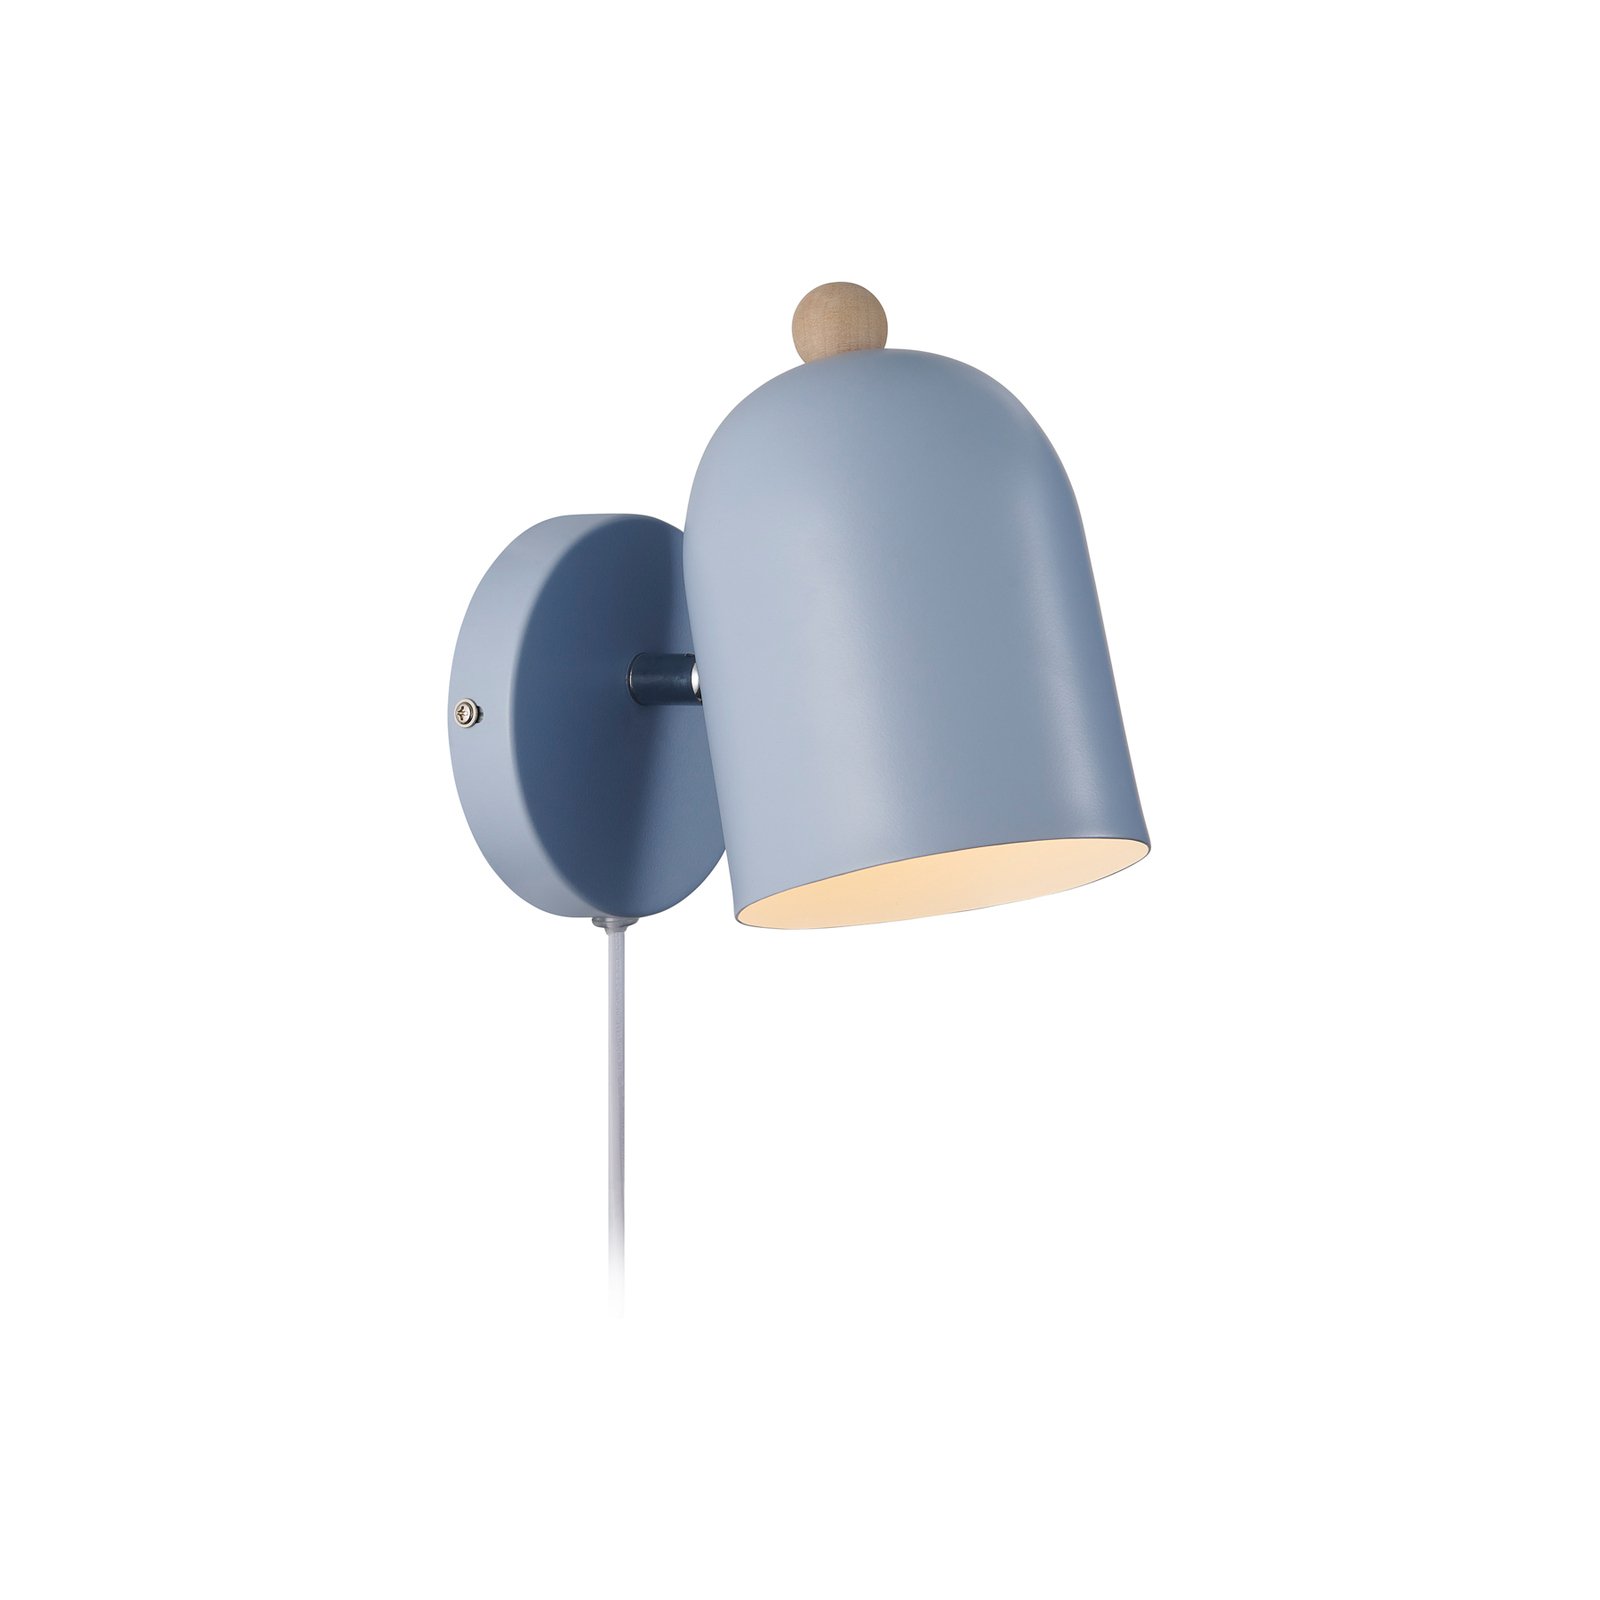 Gaston wandlamp met snoer en stekker, metaal, blauw